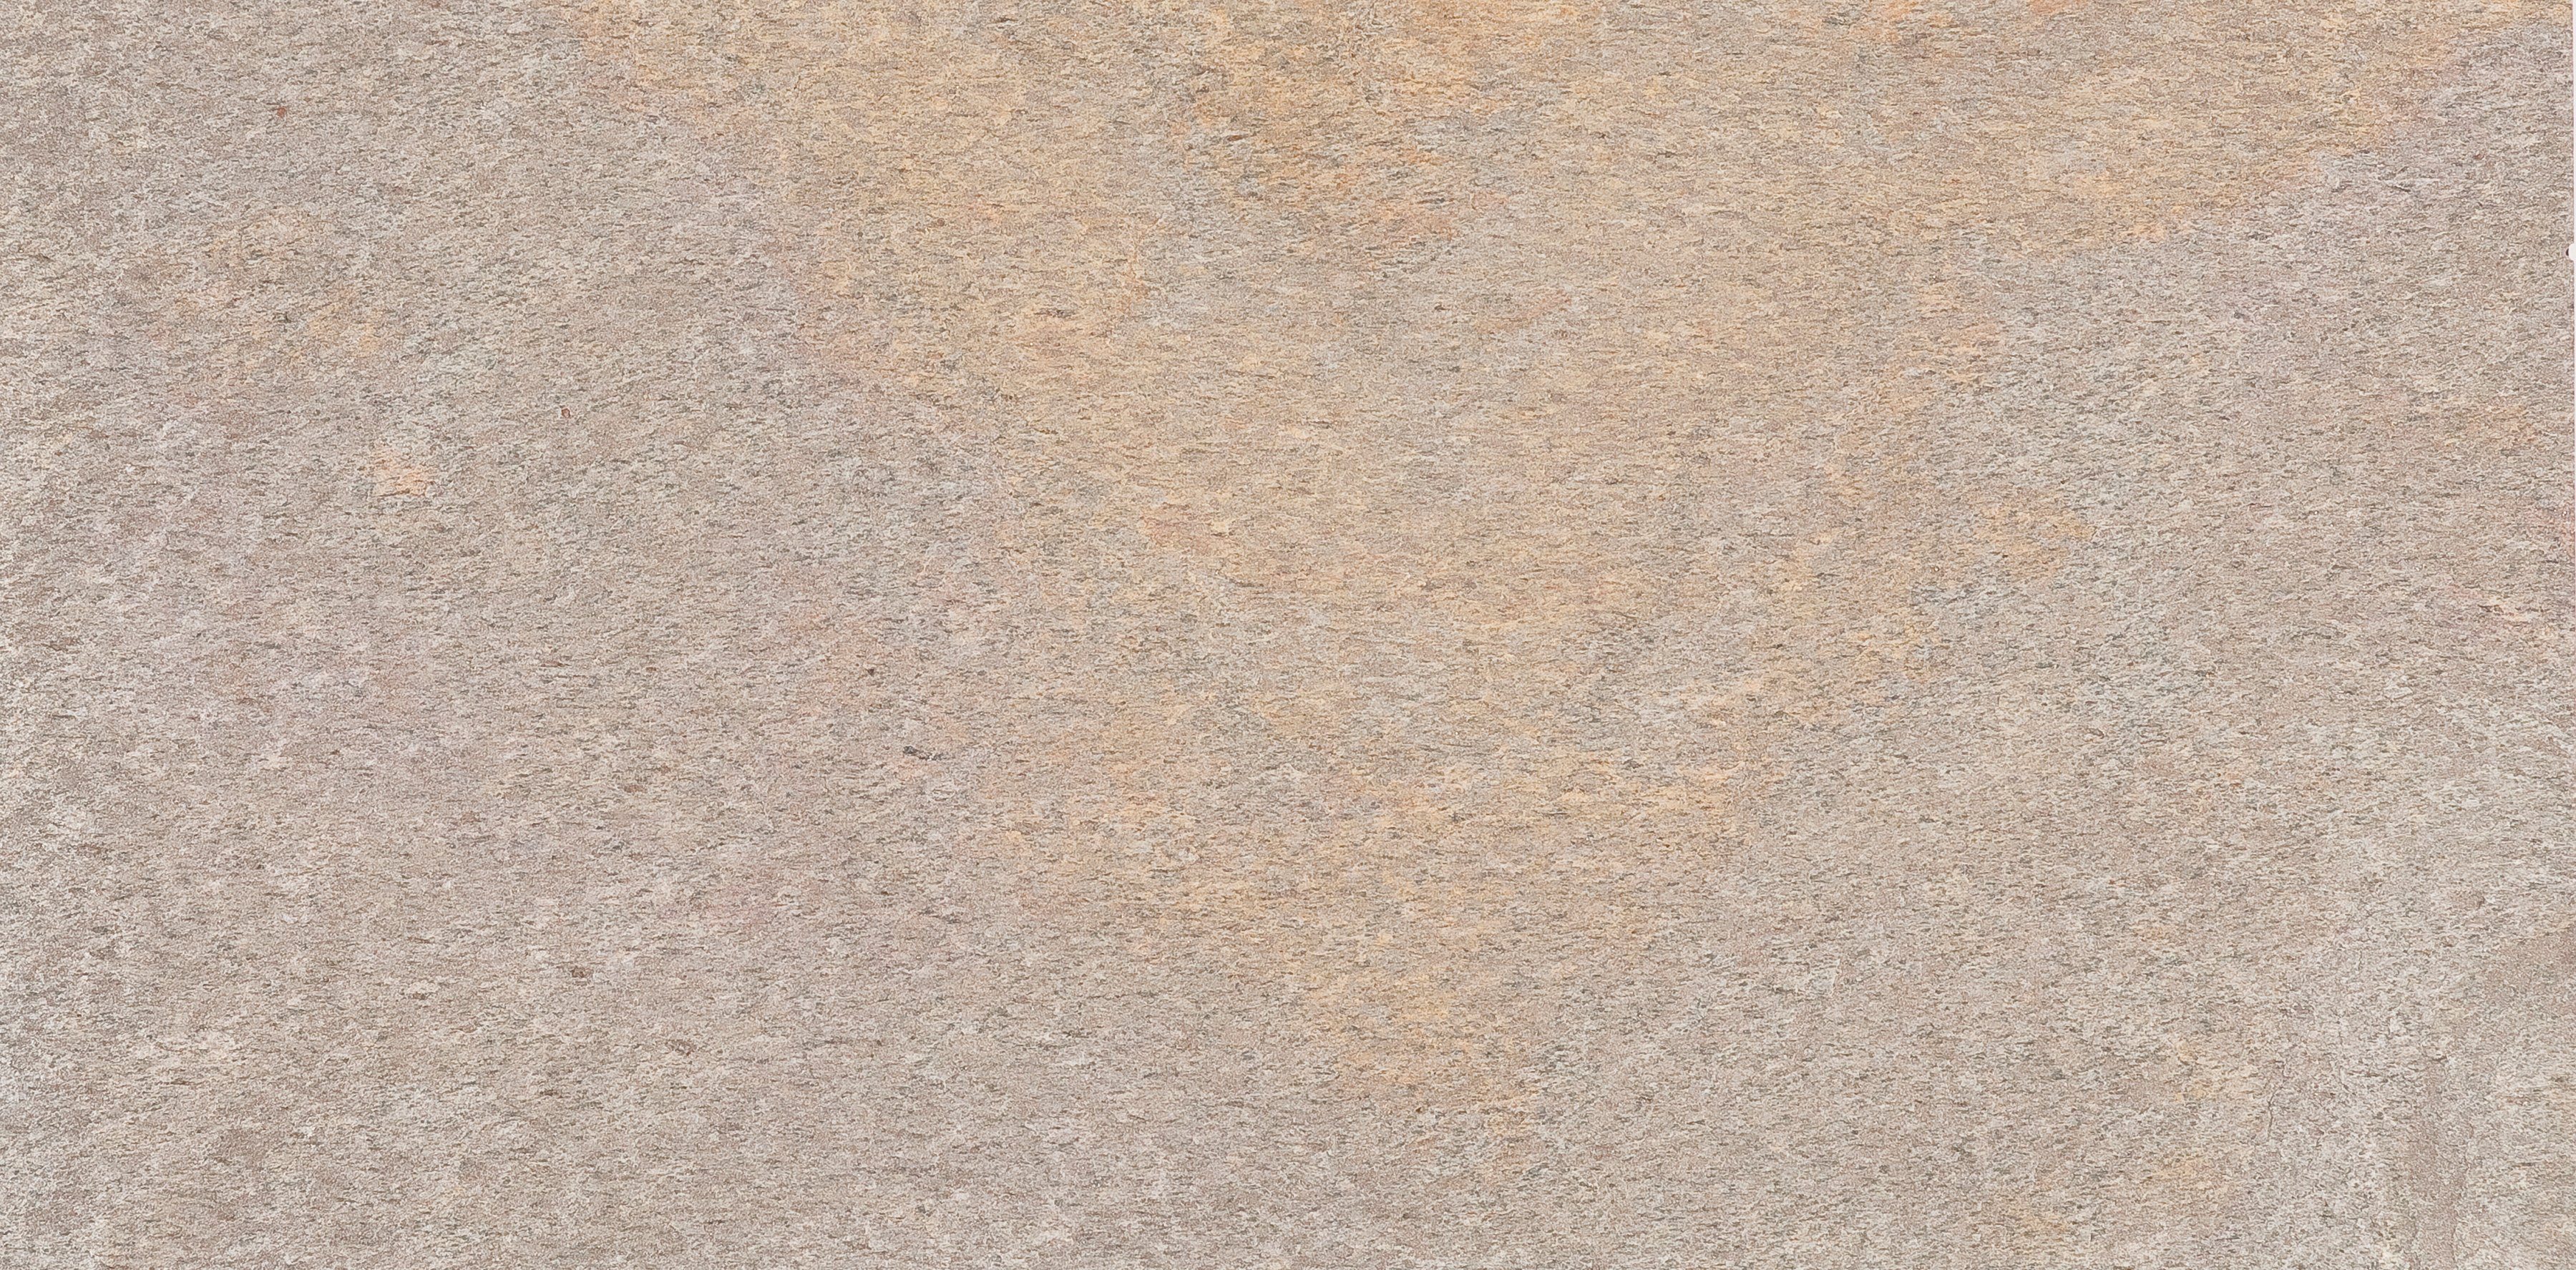 Slate Lite Dekorpaneele Auro, BxL: 122x61 cm, (1-tlg) aus robustem Echtstein, graubraun